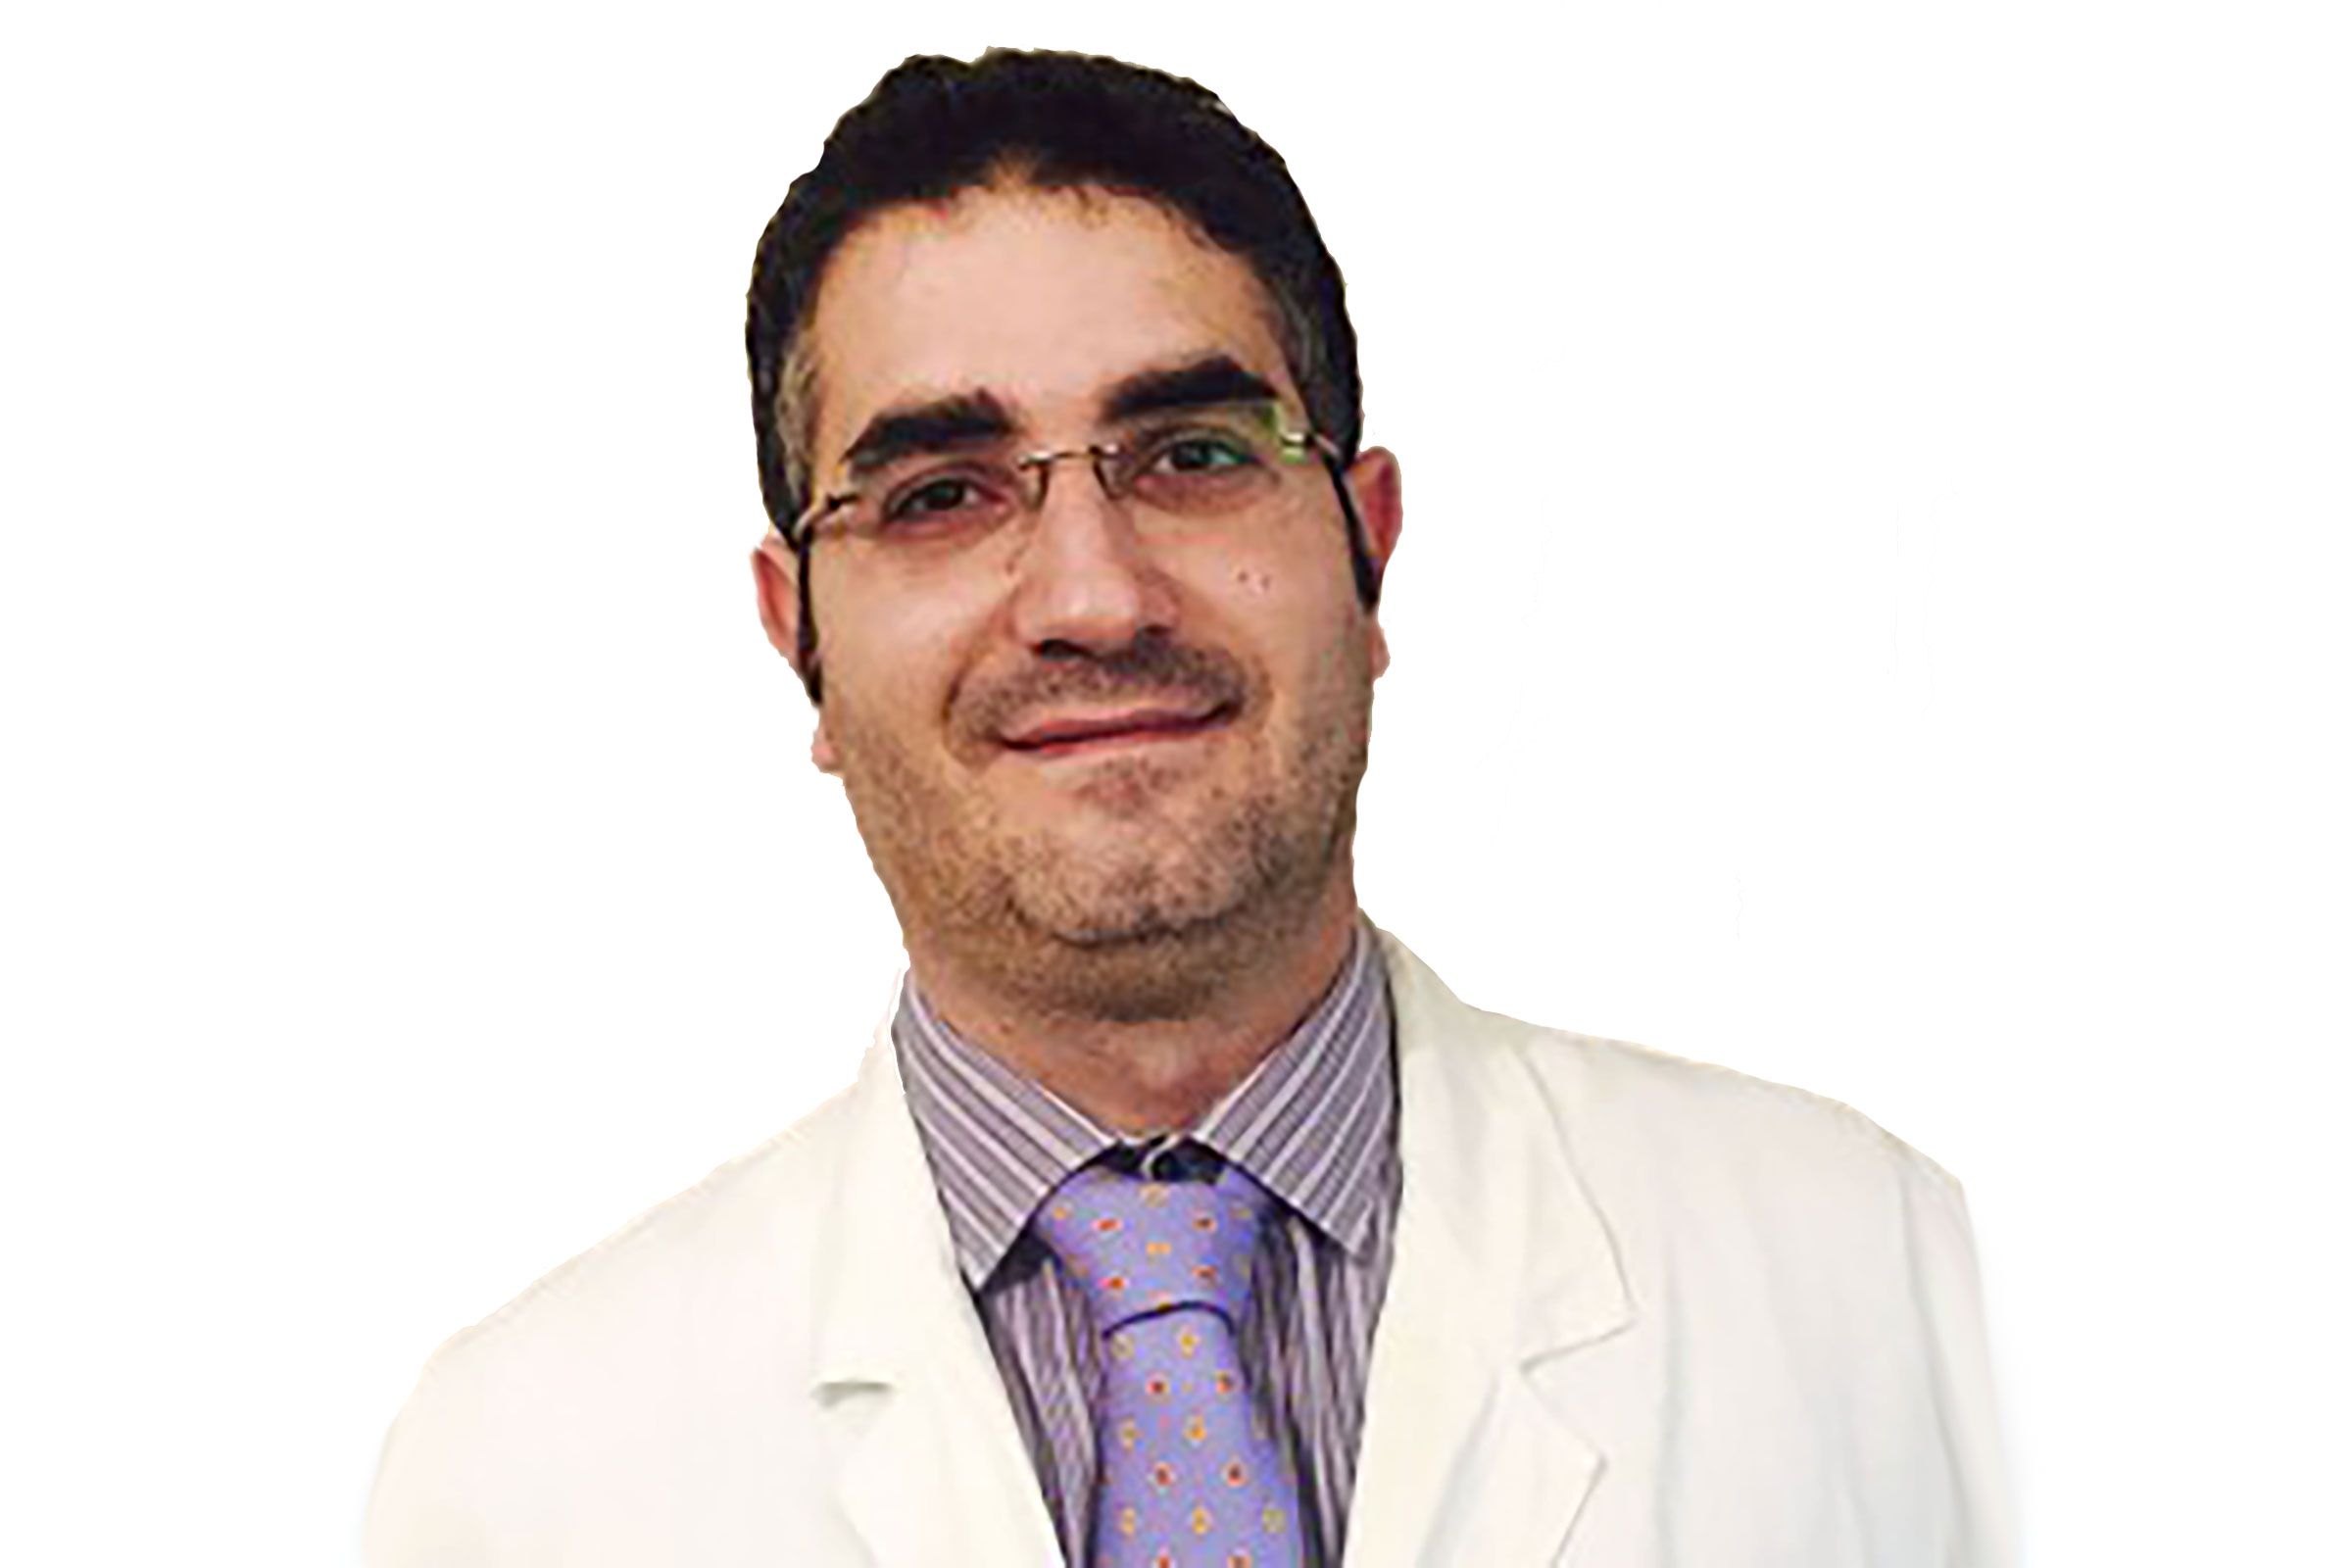 Dott. Fabio Costantino Scirocco